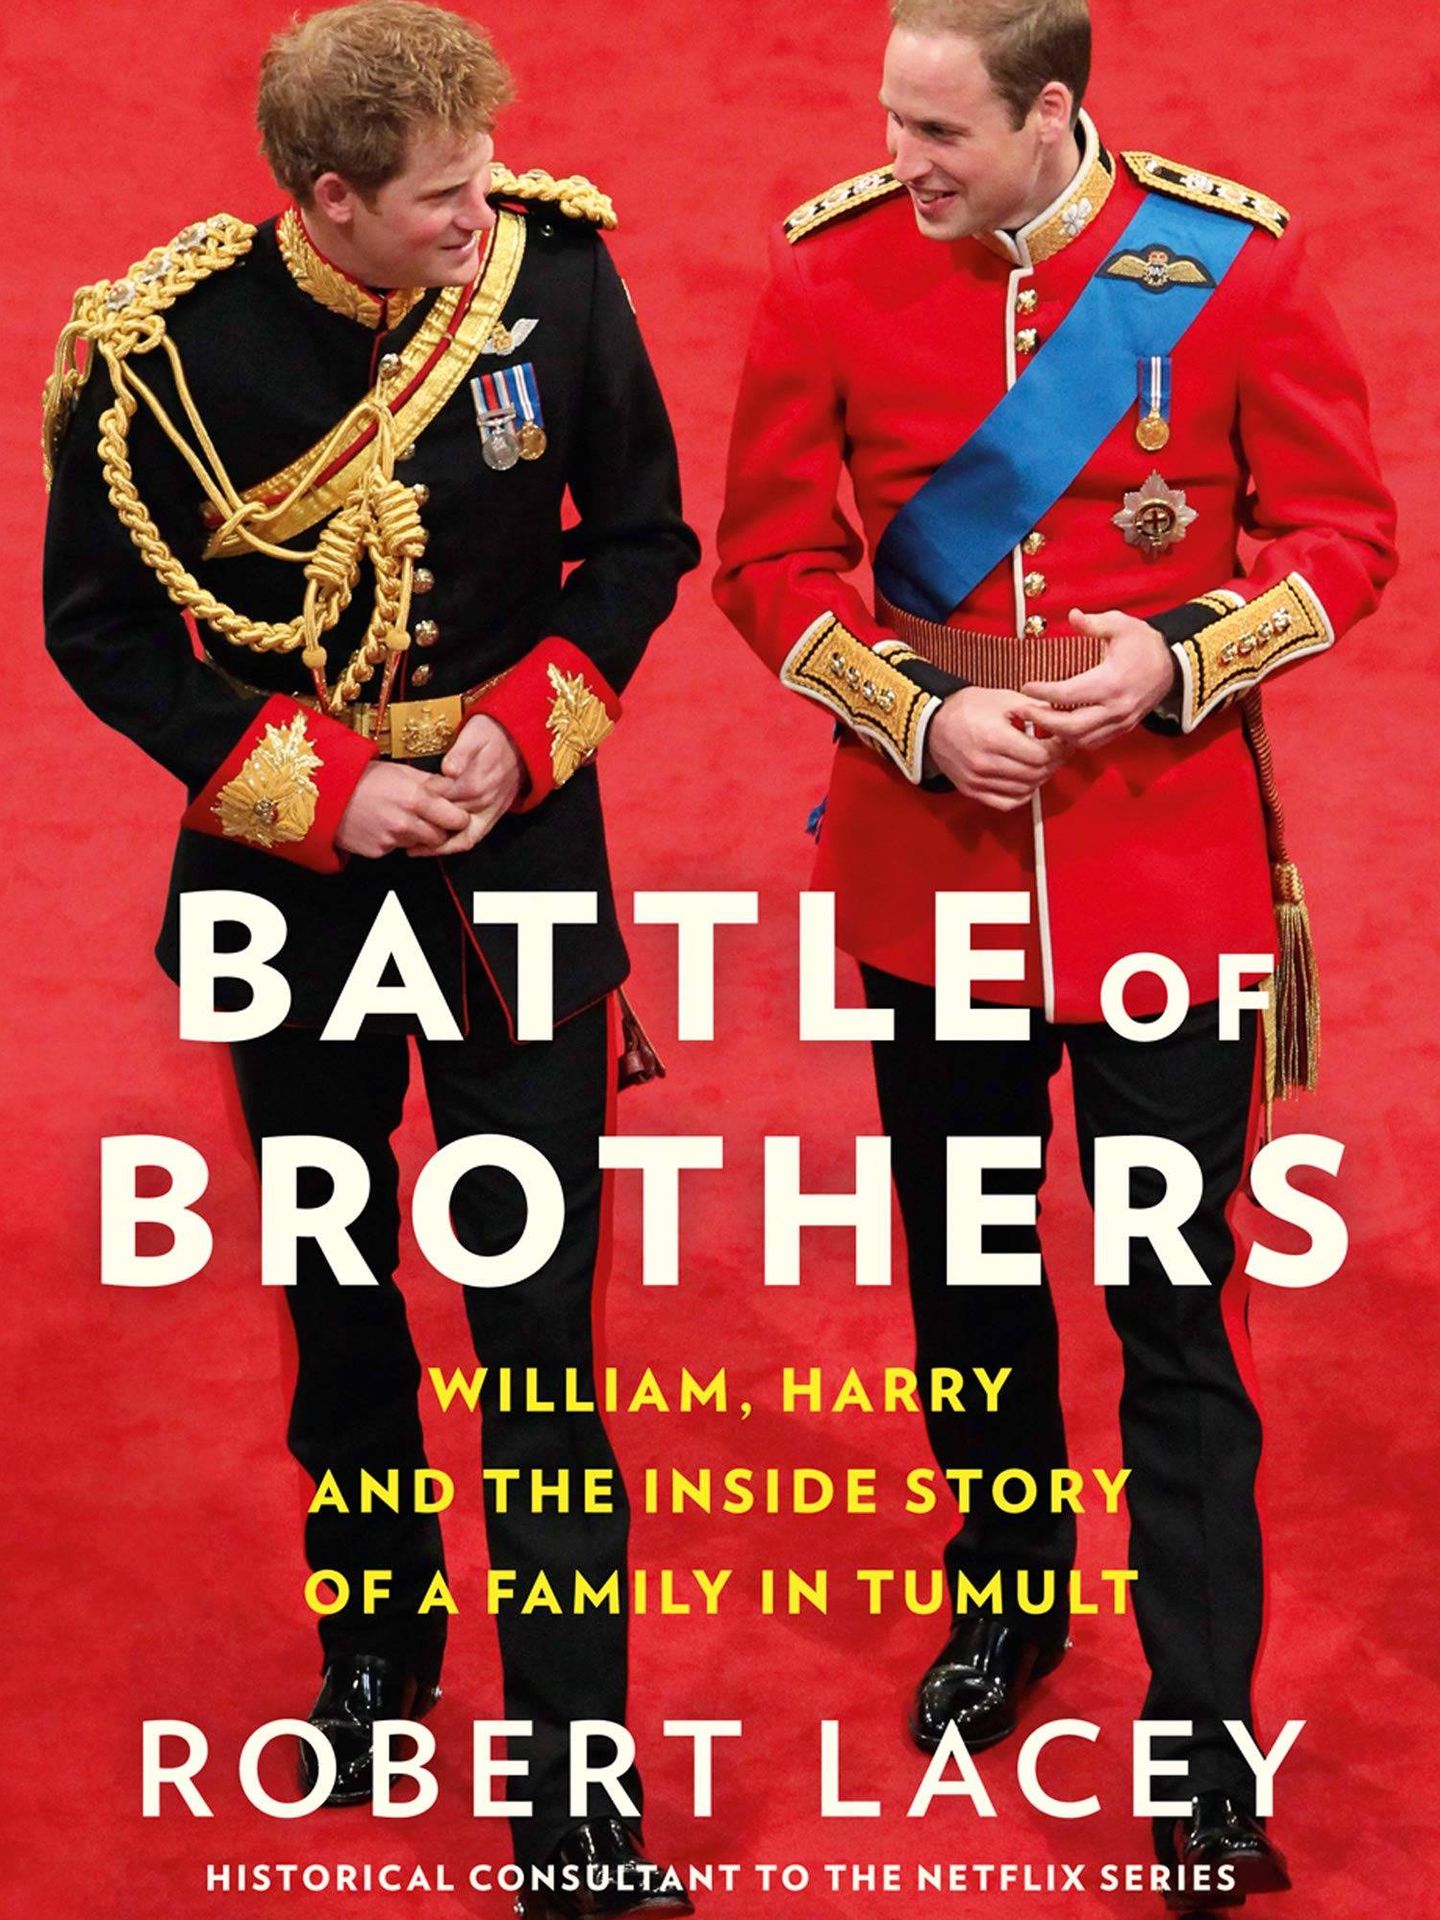 Portada del libro 'Battle of Brothers', que saldrá publicado el próximo 15 de octubre. (Amazon)